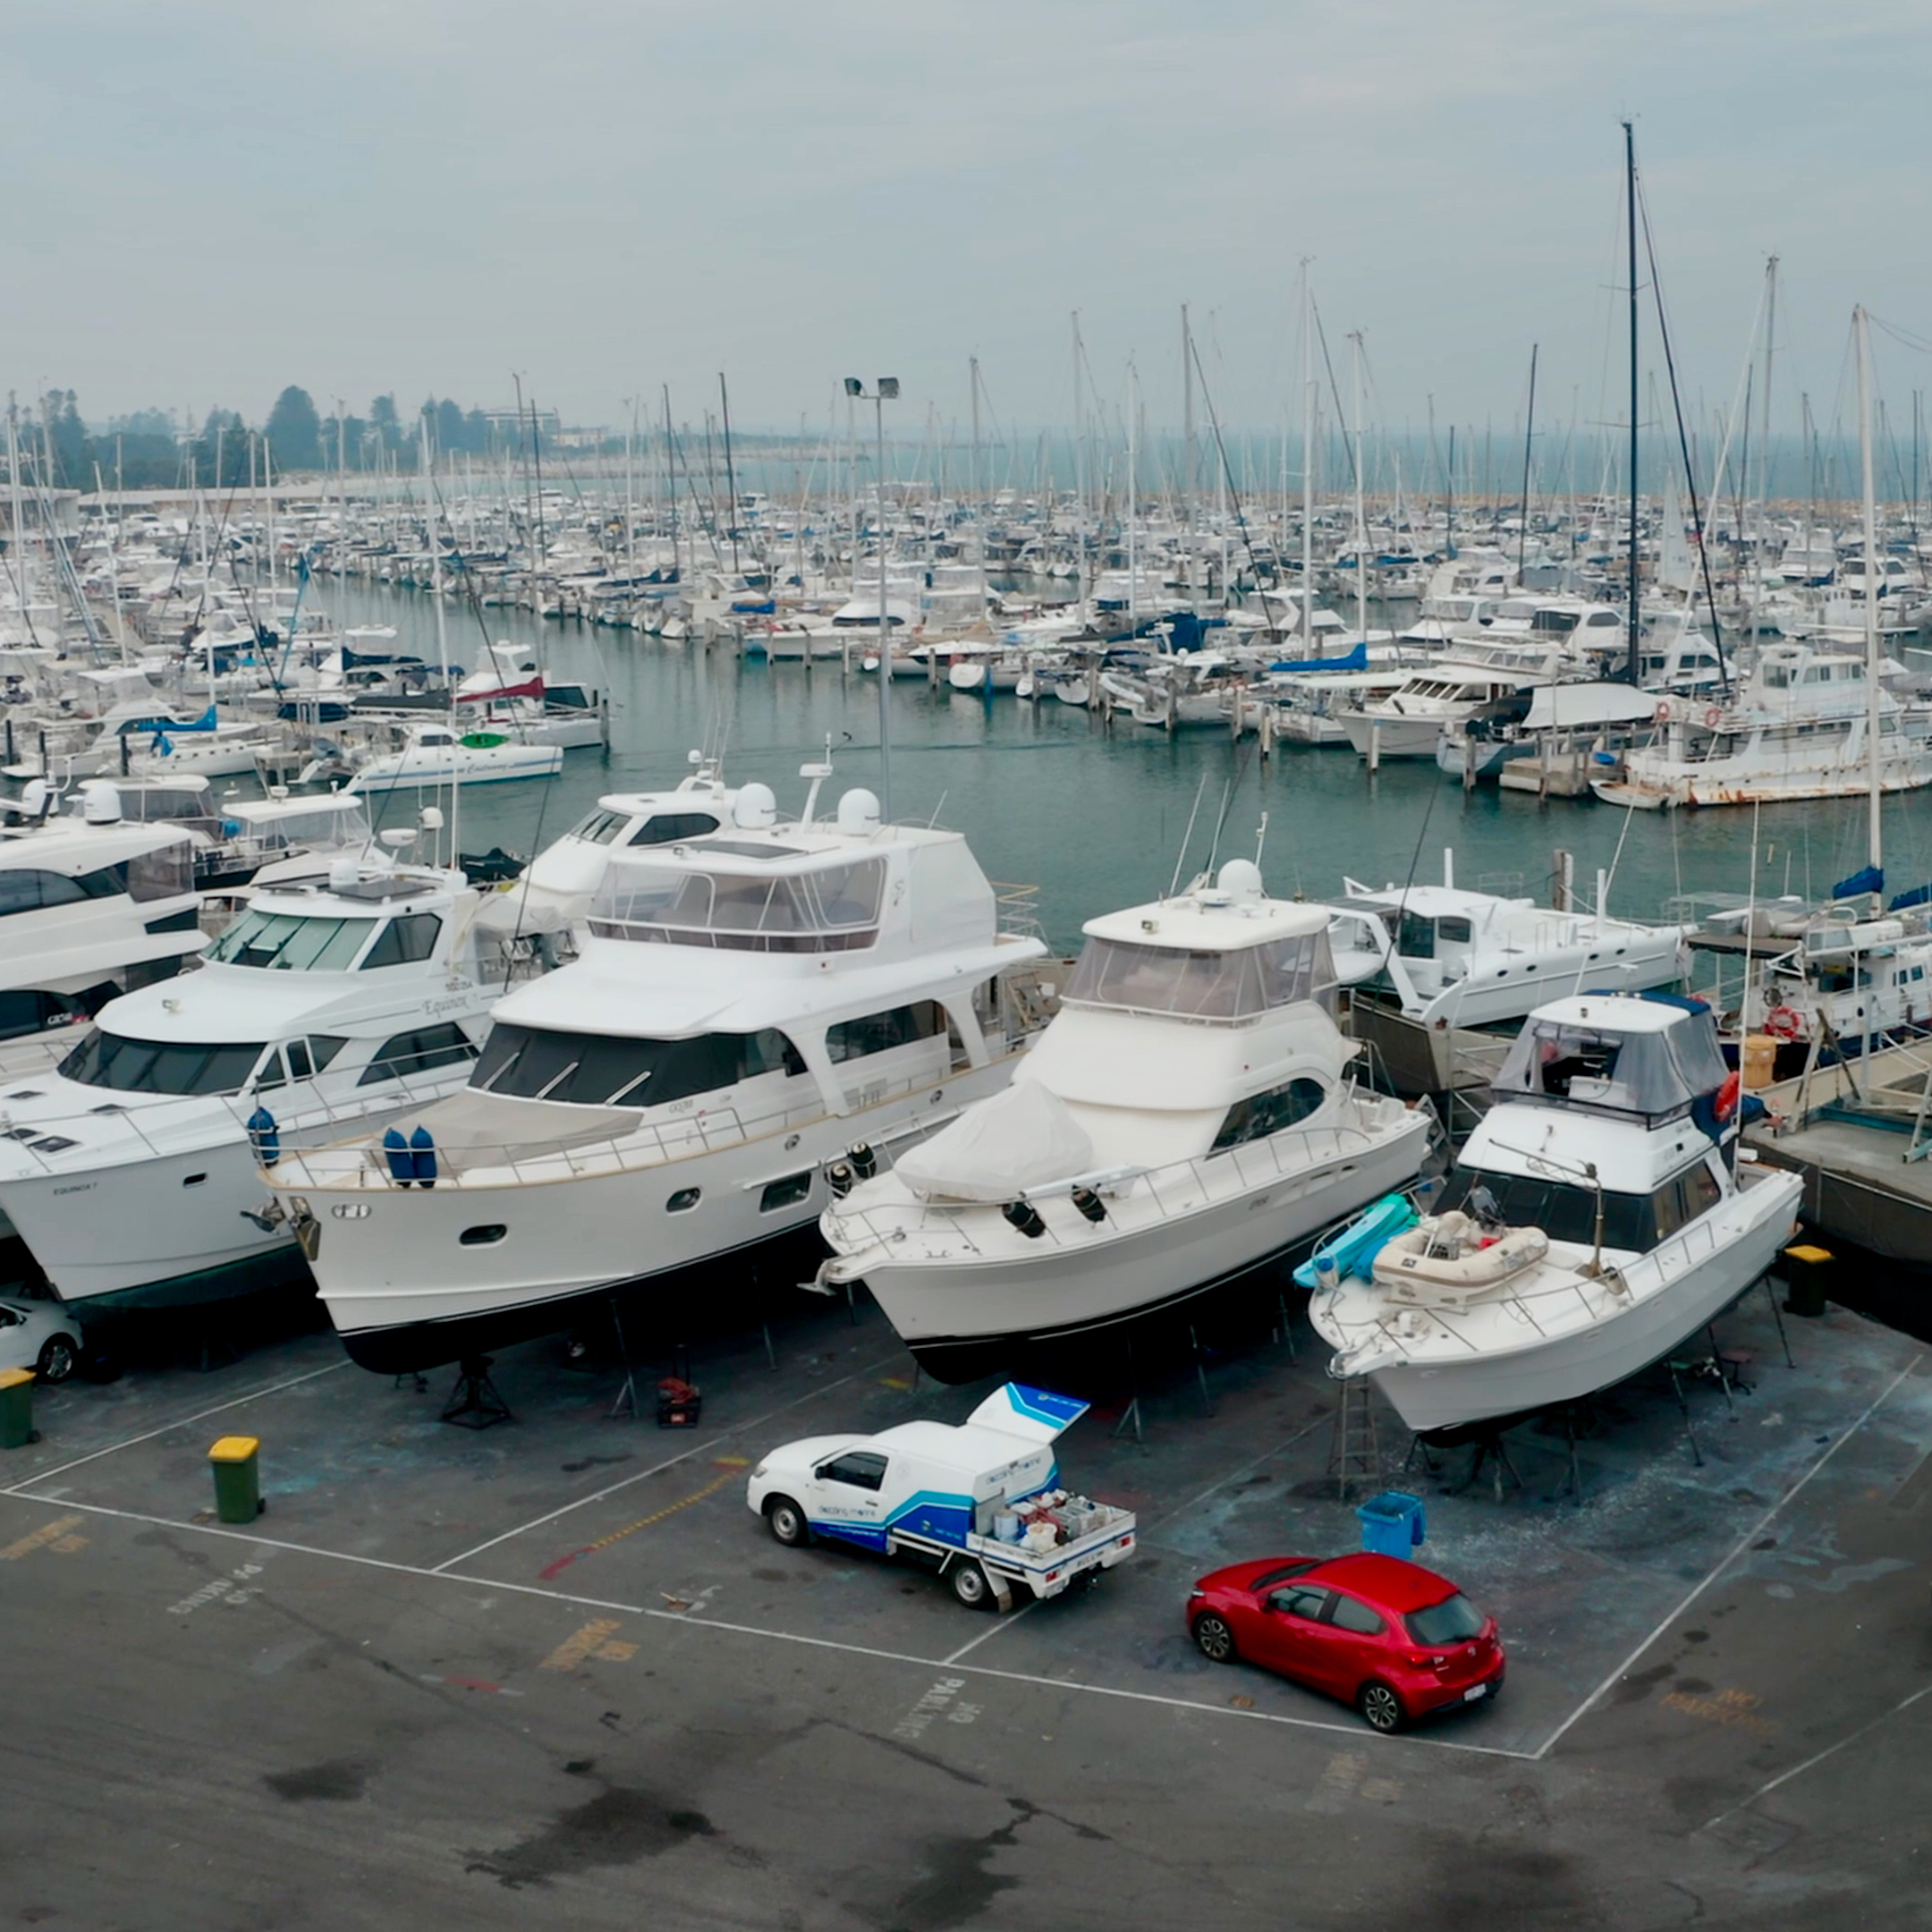 Marina with Boats